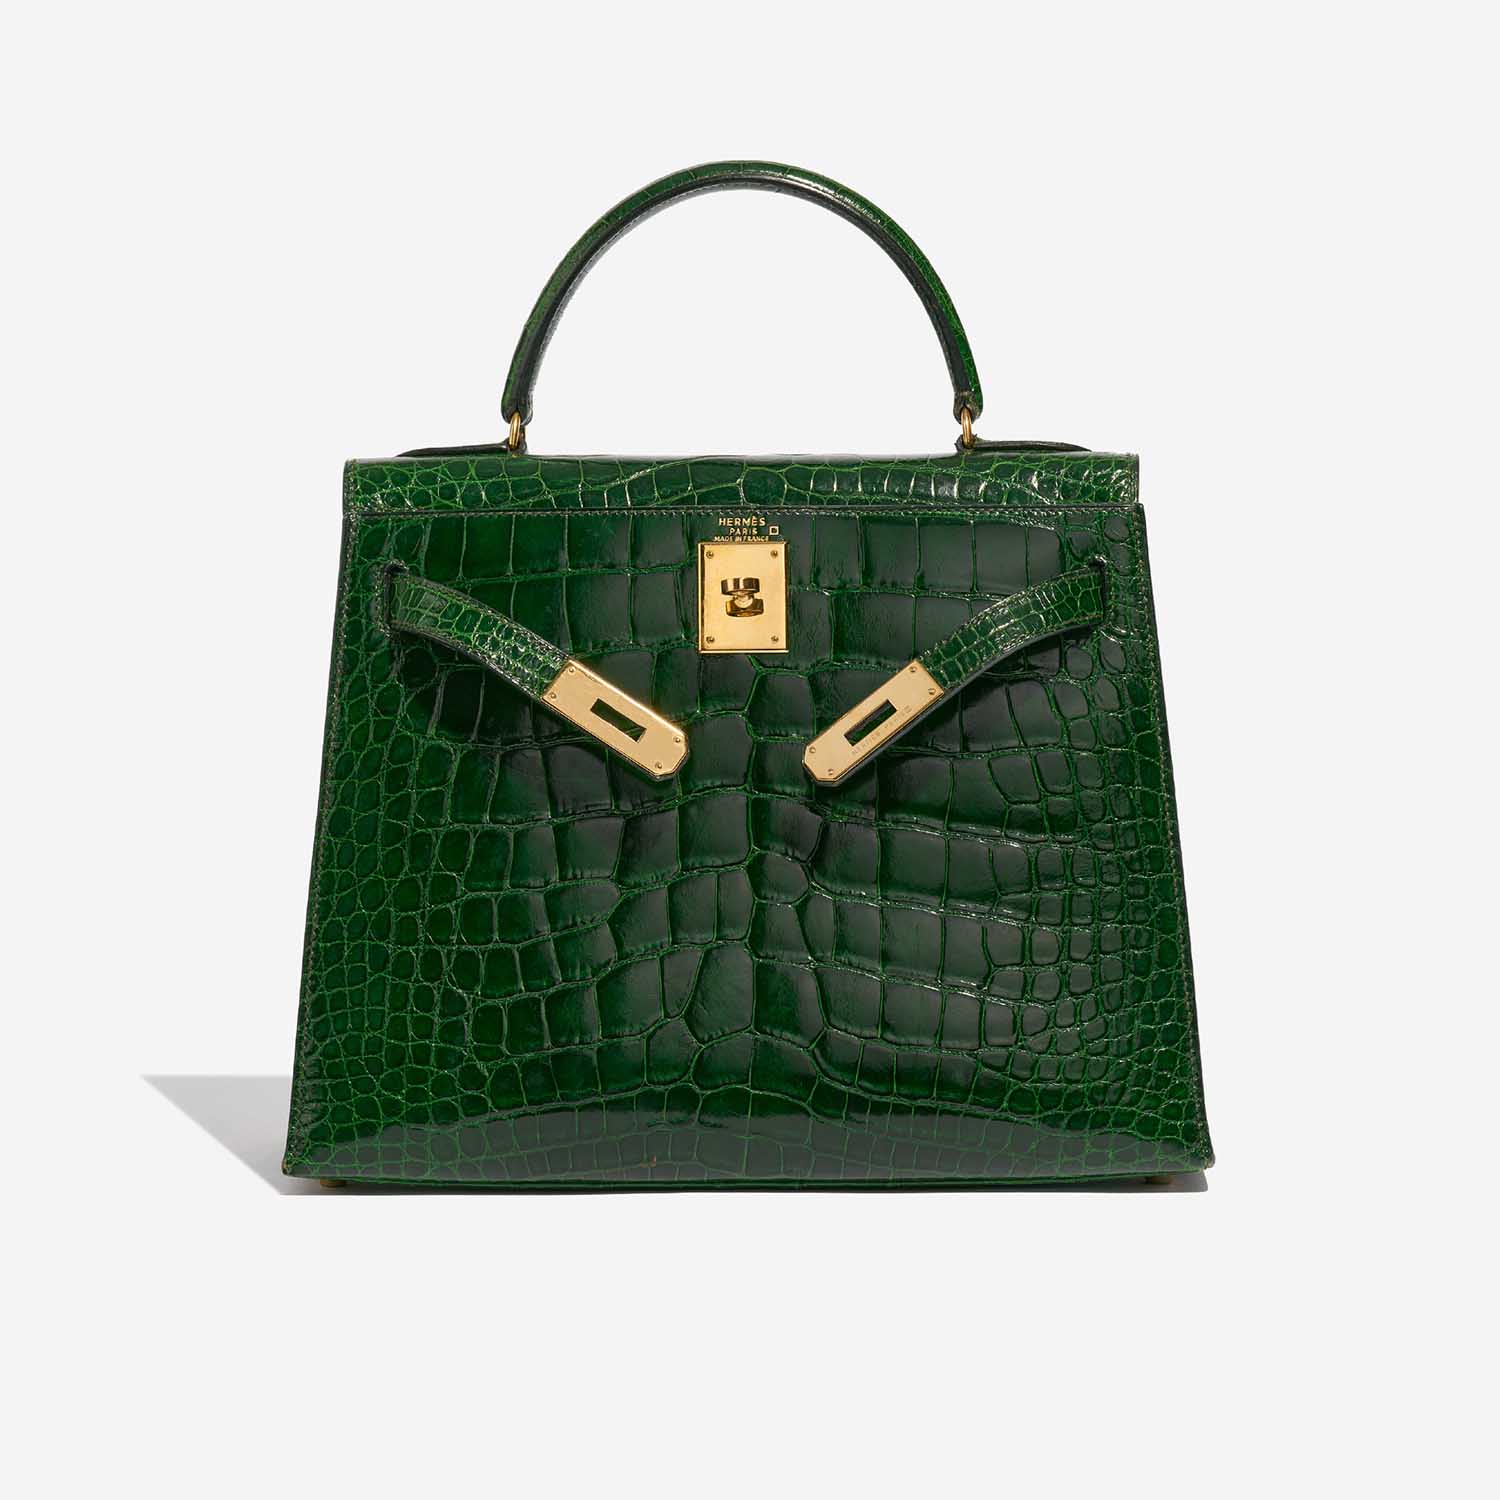 Pre-owned Hermès Tasche Kelly 28 Alligator Mississippiensis Vert Emeralde Grün Front Open | Verkaufen Sie Ihre Designer-Tasche auf Saclab.com